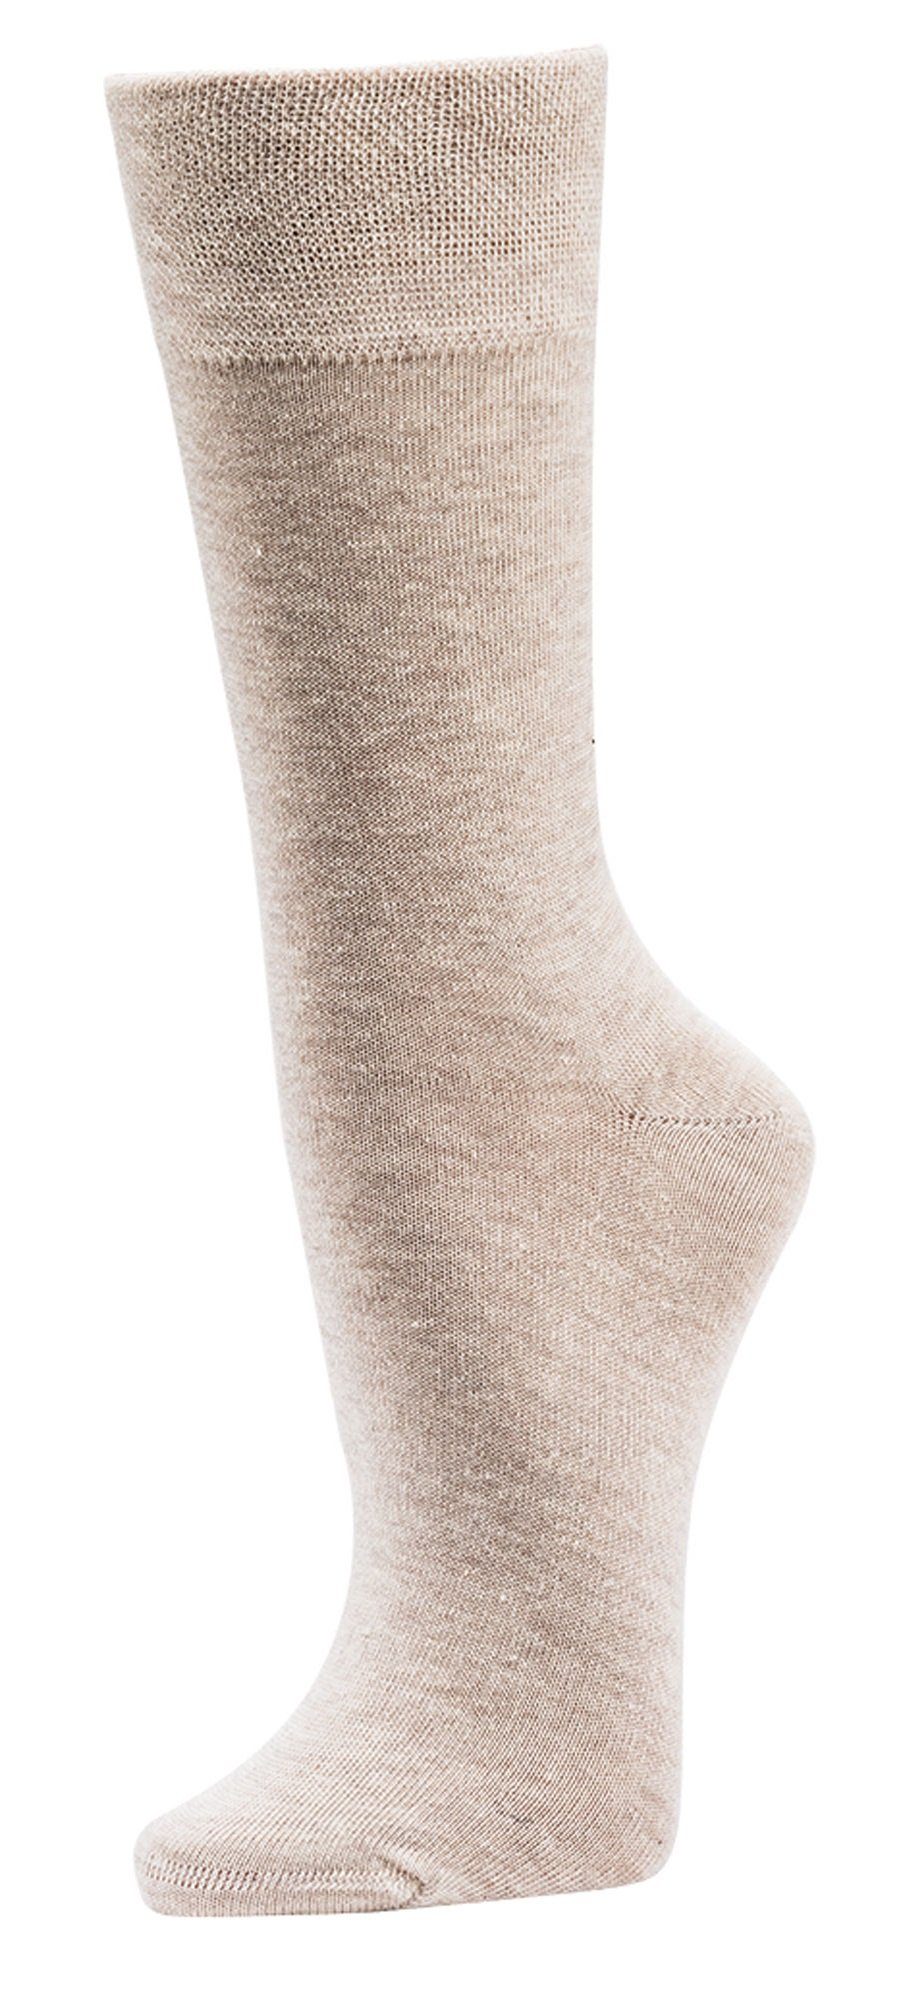 TippTexx 24 Socken 6 Paar Wellness-Socken aus Anti-Loch-Garantie Natur Bio-Baumwolle mit